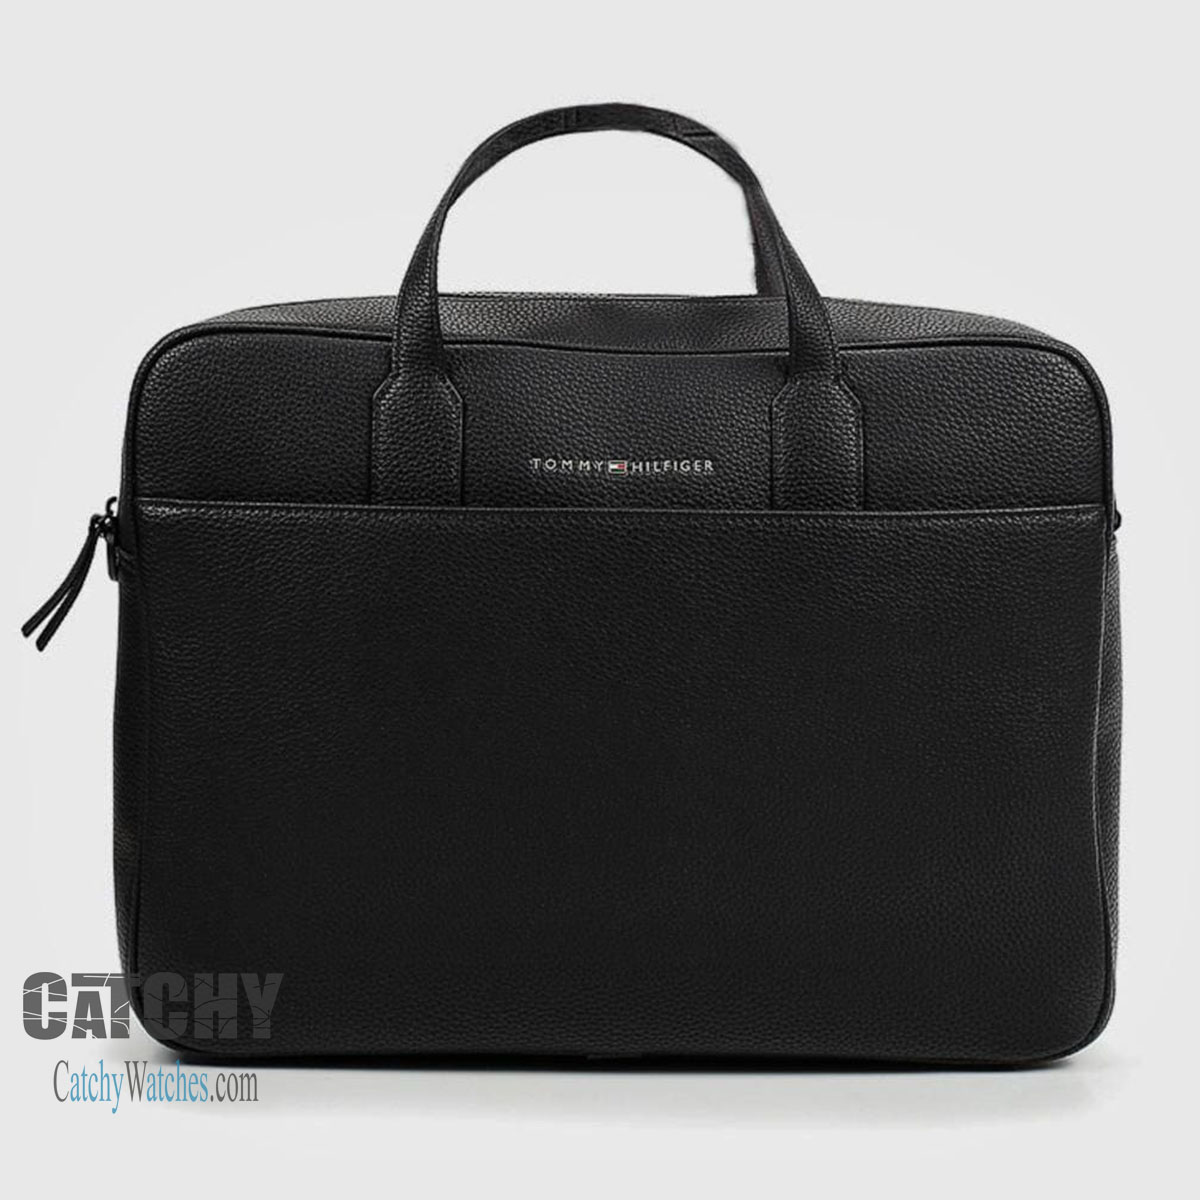 laptop-bag-tommy-hilfiger-leather-black-messenger-unisex